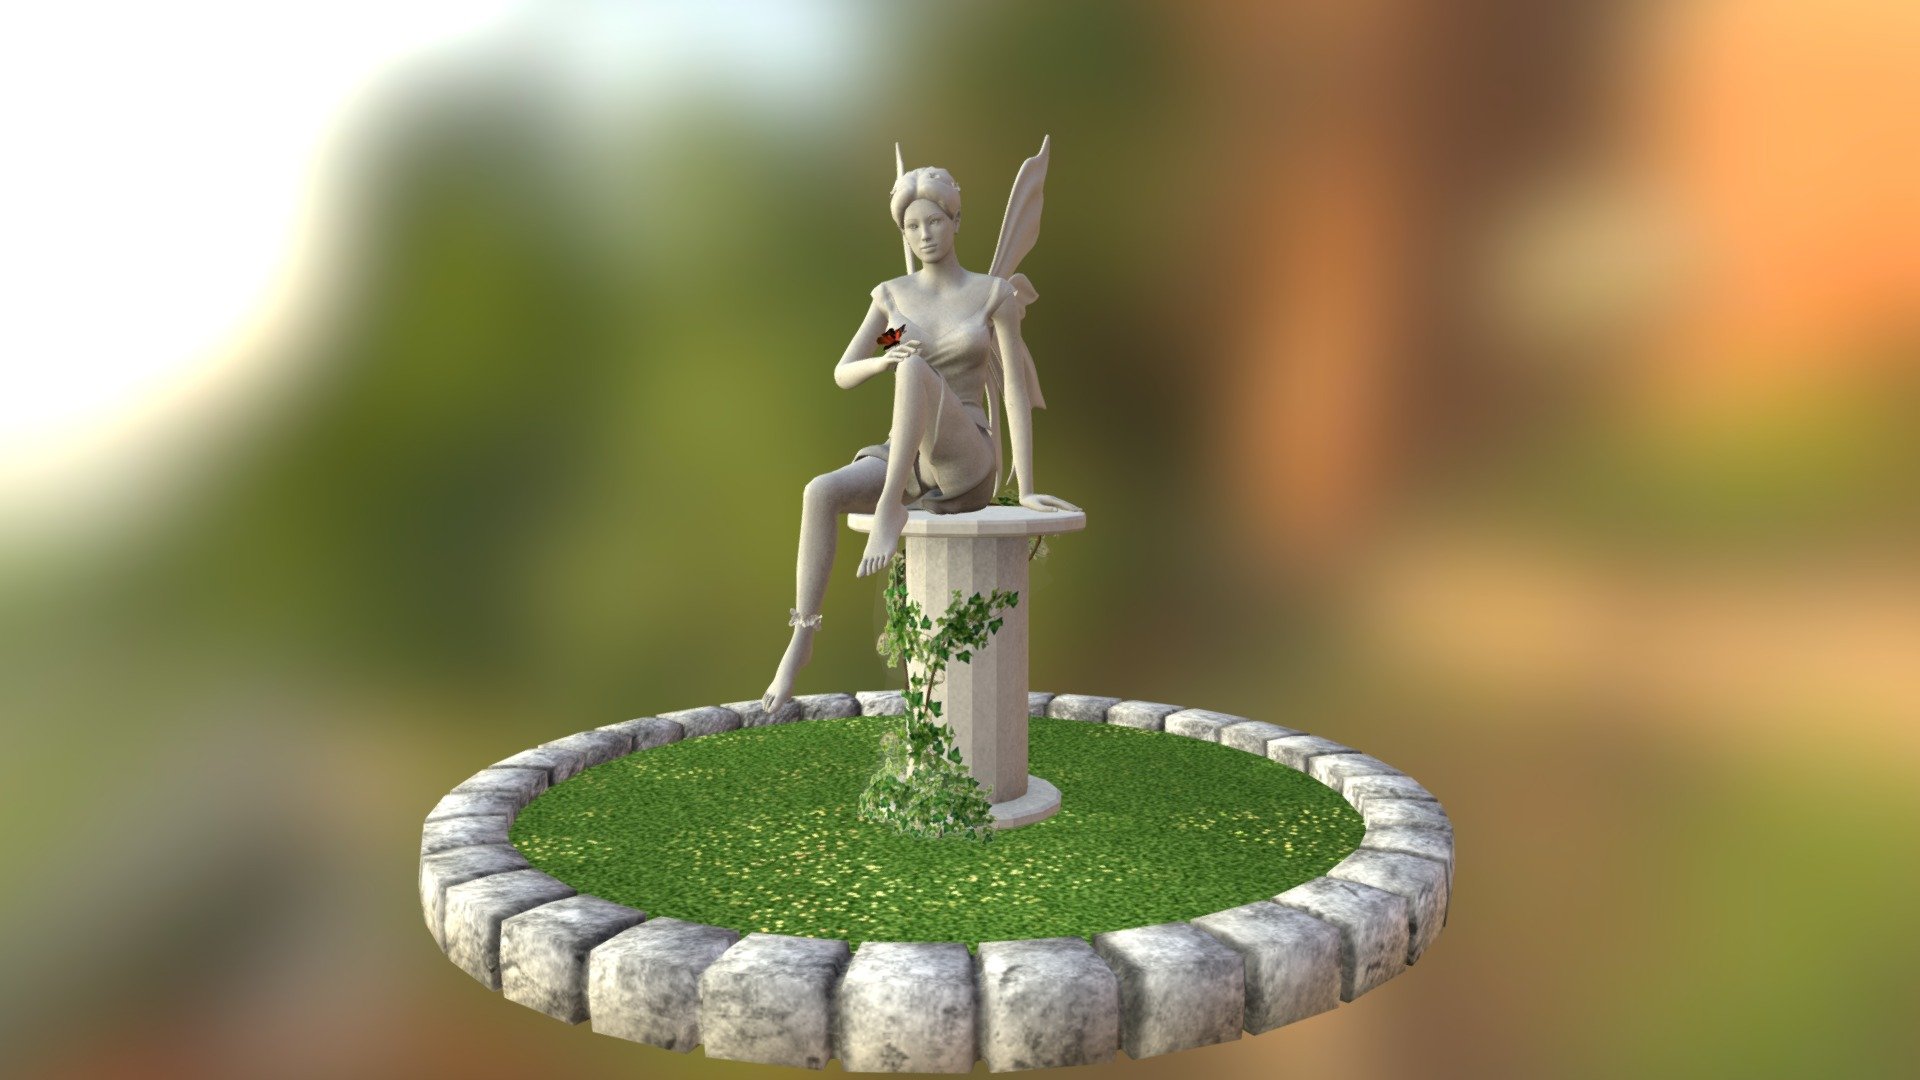 Fairy Garden Statue - 3D model by Bridget (@bridgetlykin) 3d model